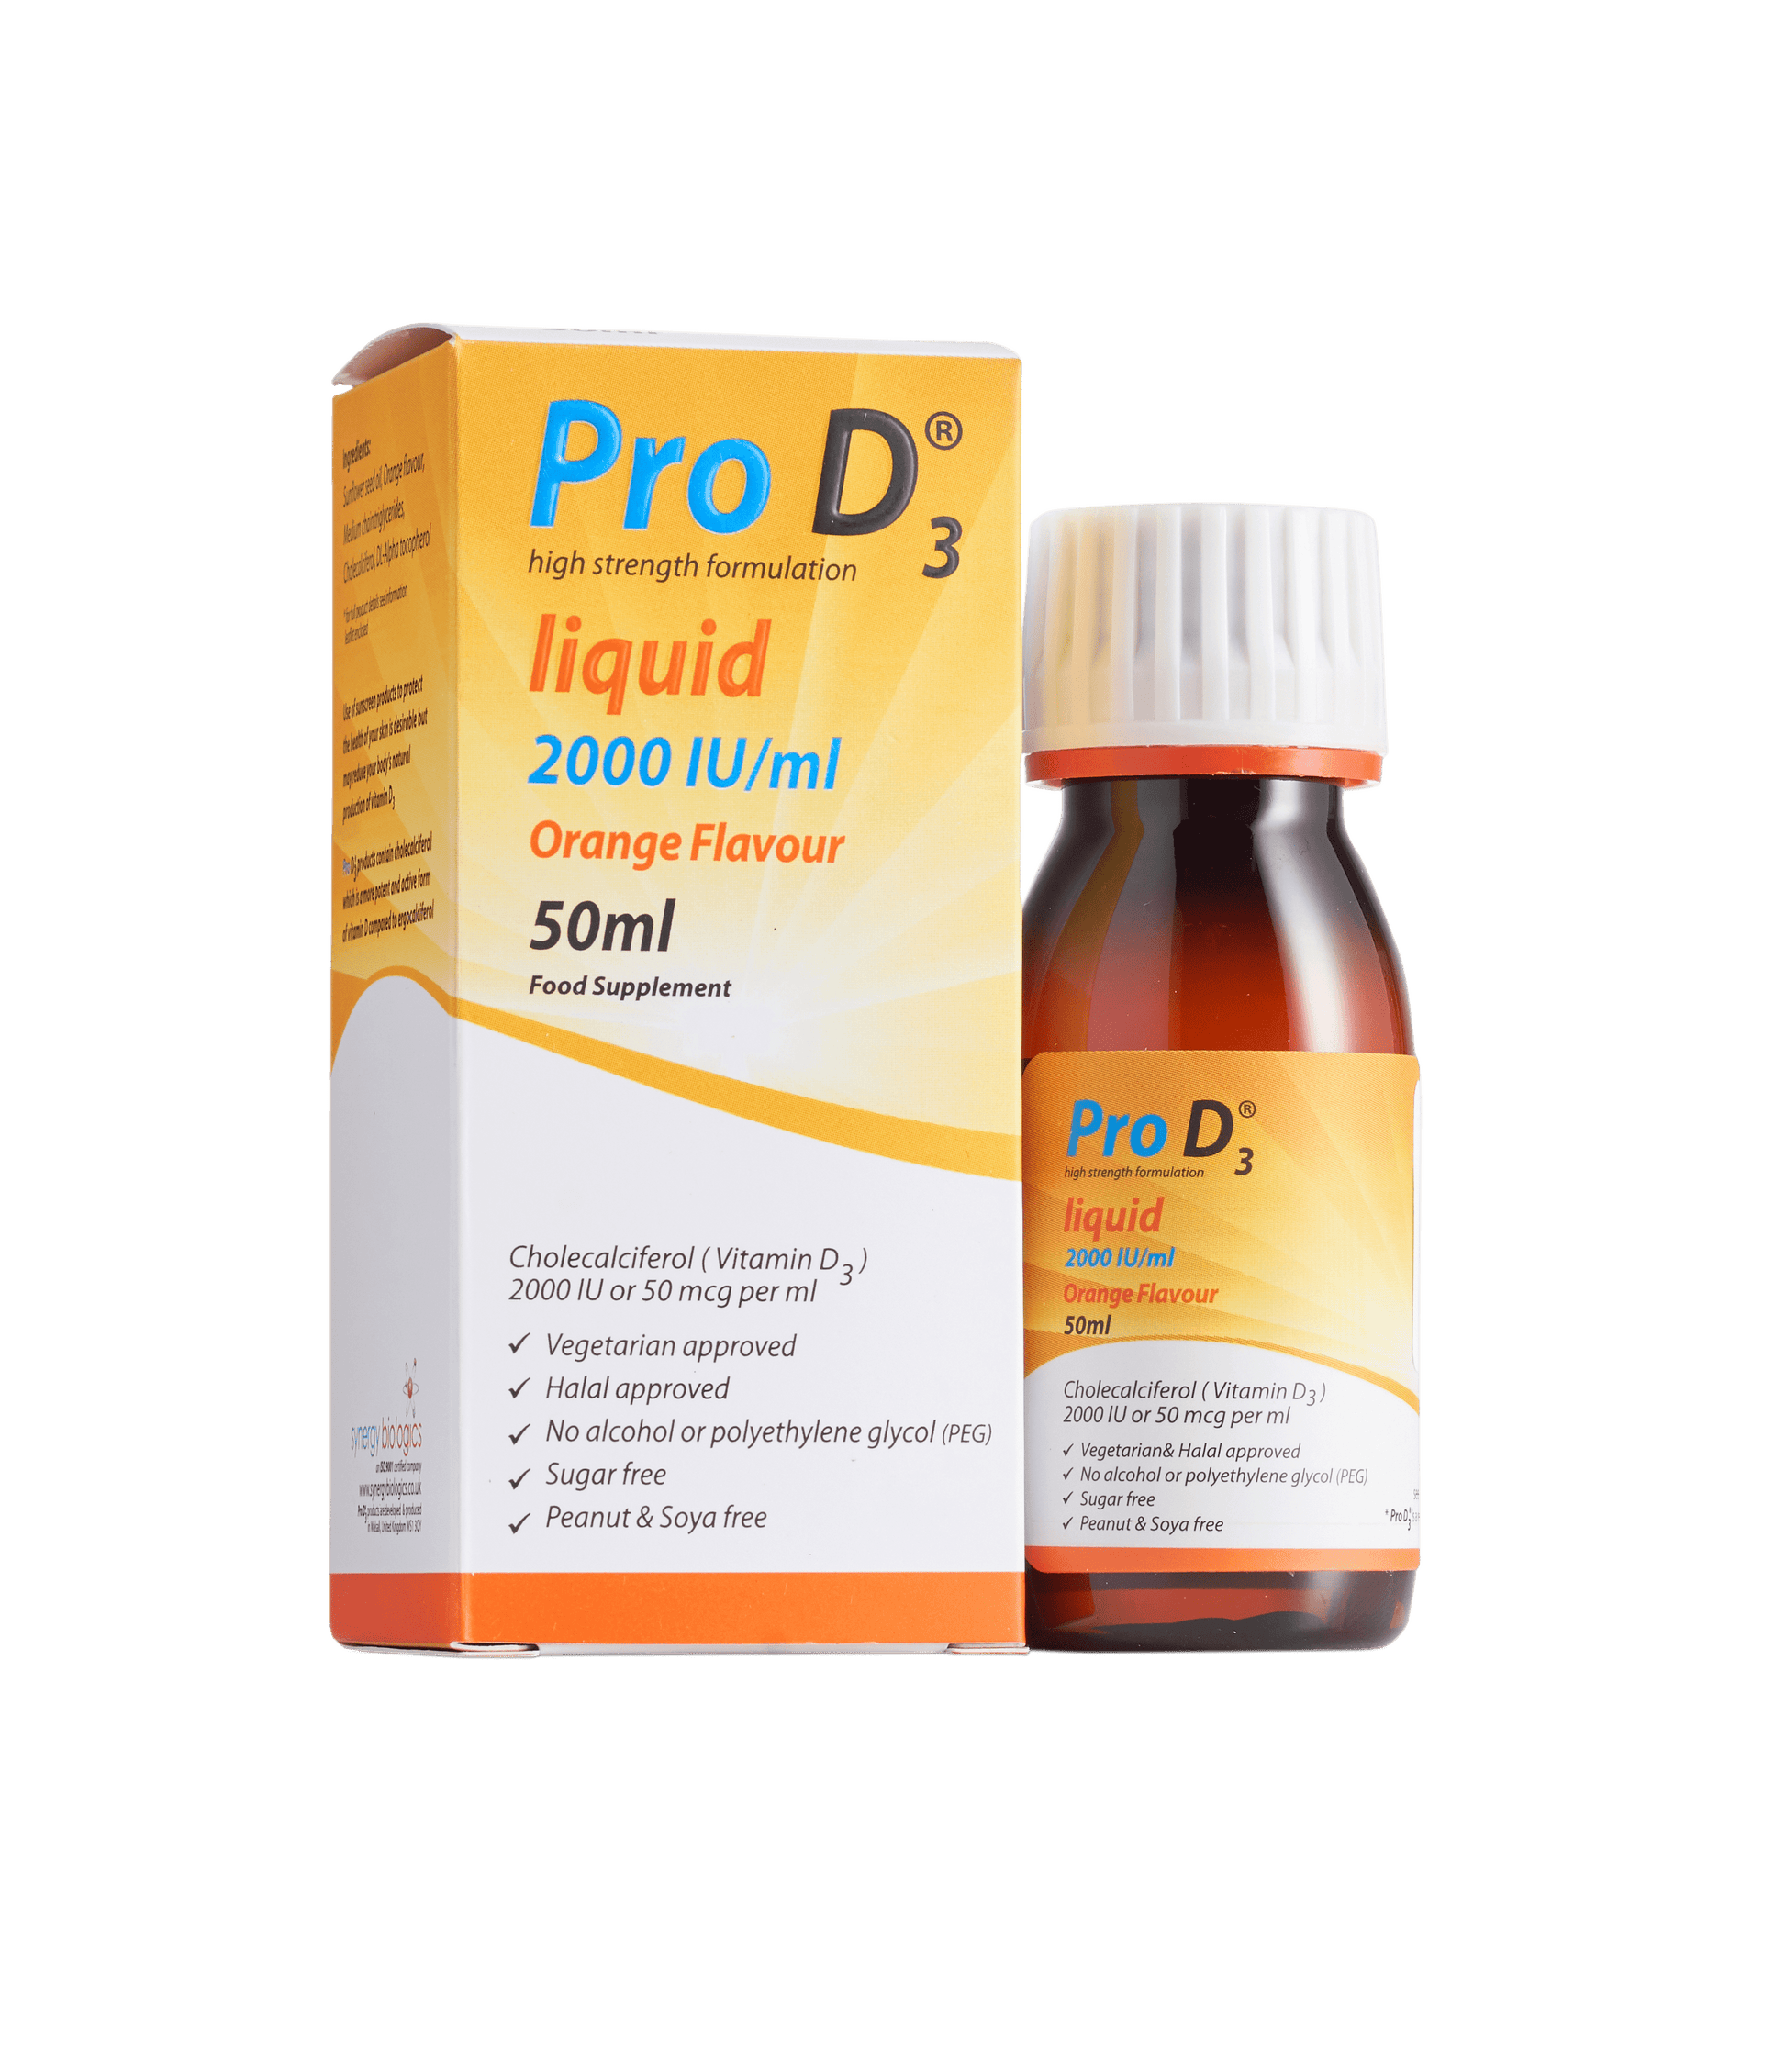 Pro D3 Liquid - 2000 IU per ml - 50ml Bottle with Syringe